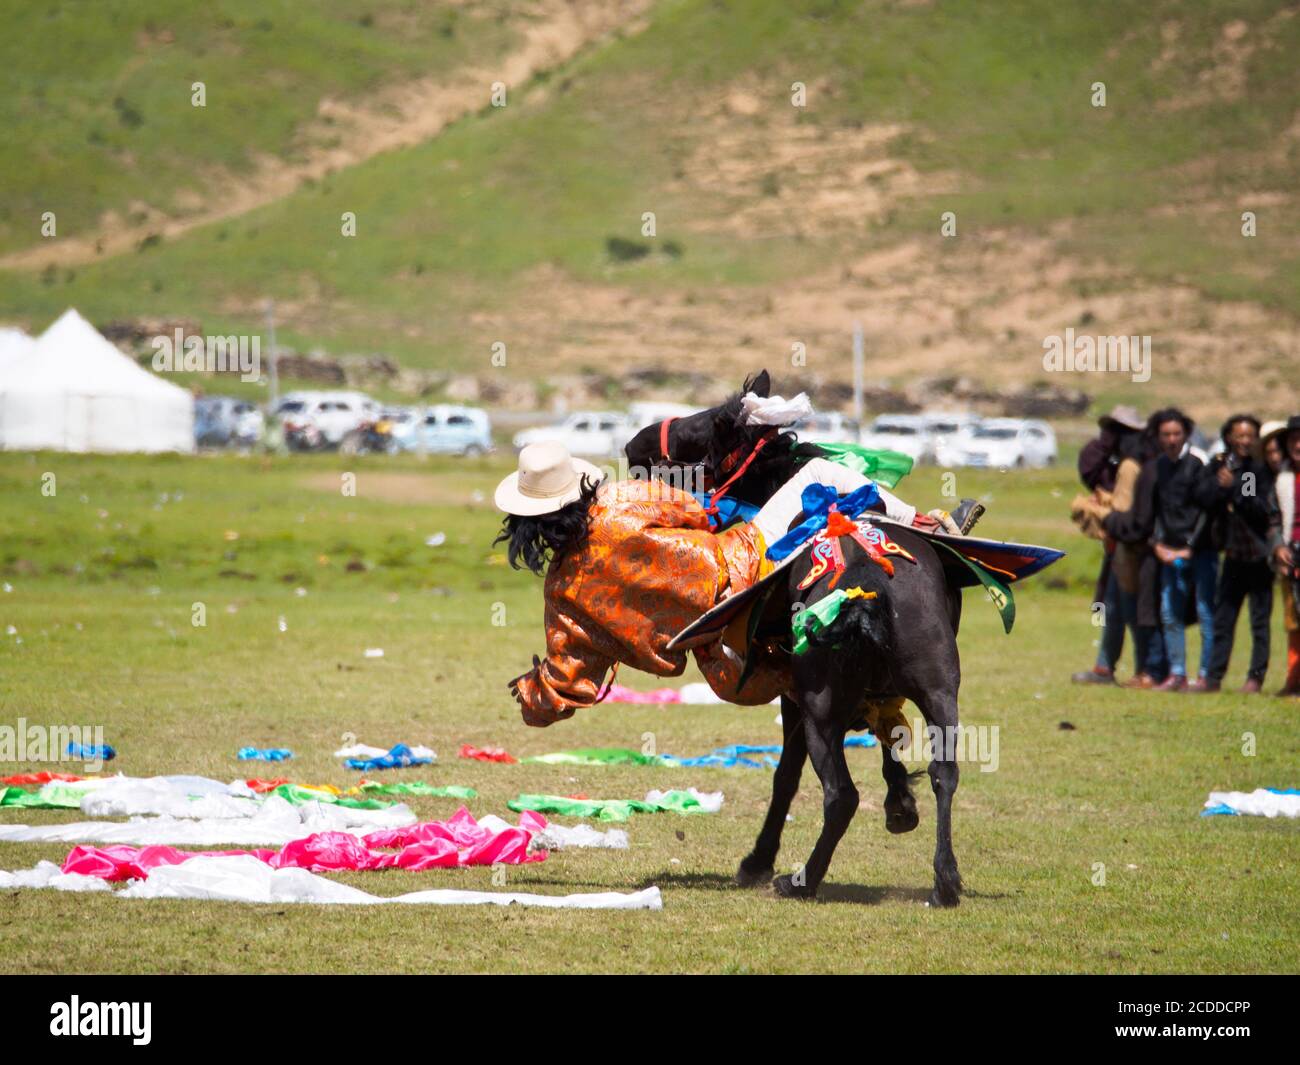 Ein Khampa-Mann versucht, sich auf dem Boden Tücher zu holen, während er auf seinem Pferd reitet, ein Teil des Rennens auf dem Pferdefest in der Nähe von Litang City. Stockfoto